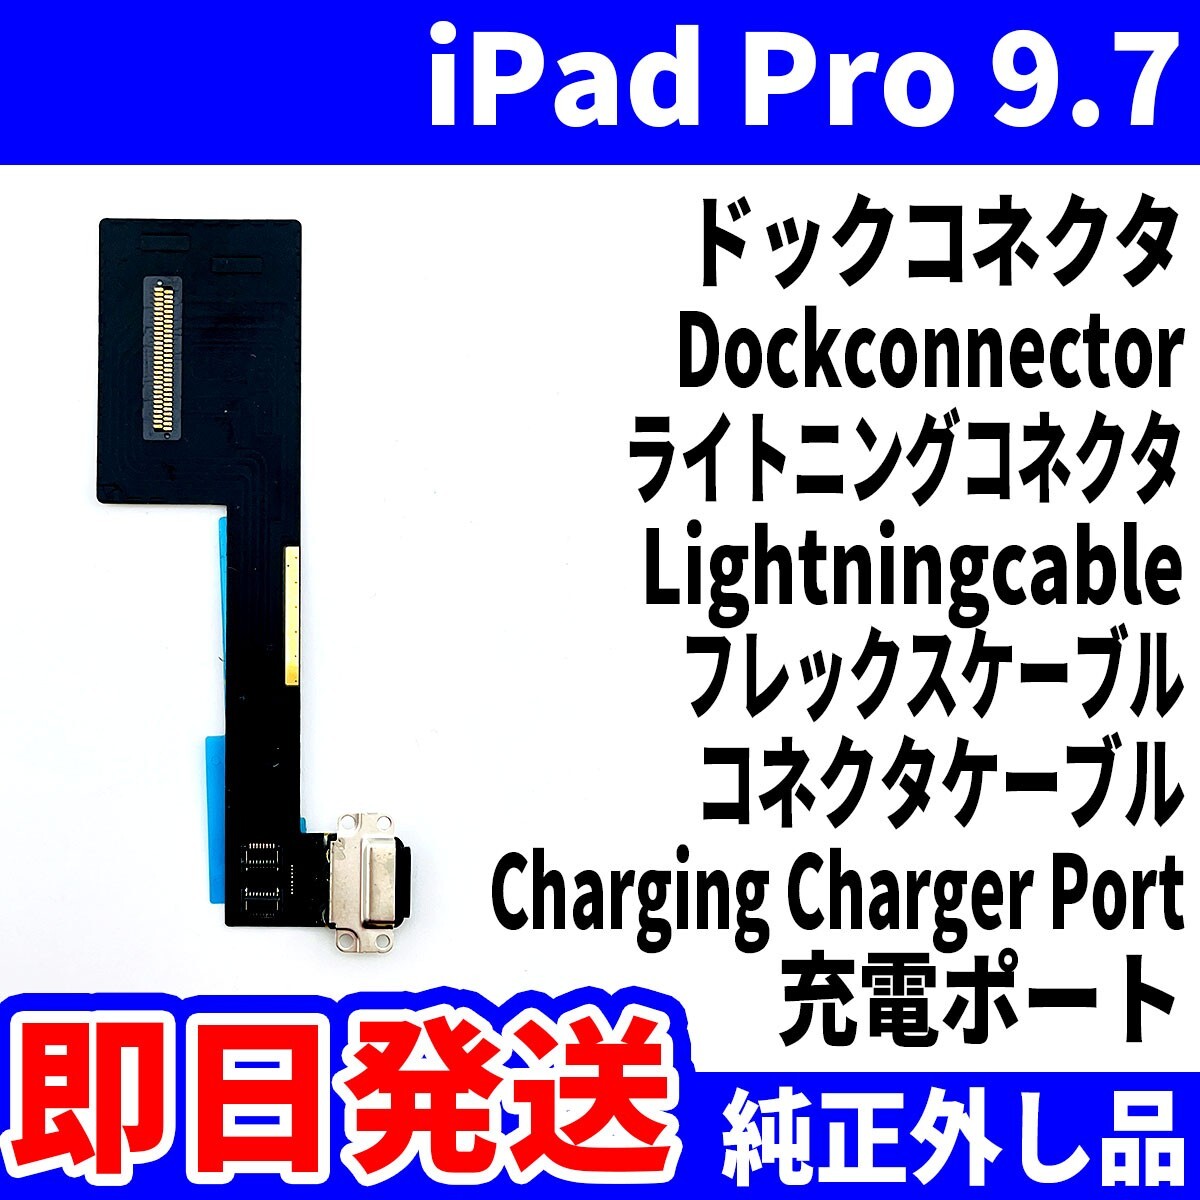 即日発送 iPad Pro9.7 ドックコネクタ 黒 ライトニングコネクタ 充電差込口 充電ポート Dockconnector Lightning 修理 パーツ 交換 動作済_画像1